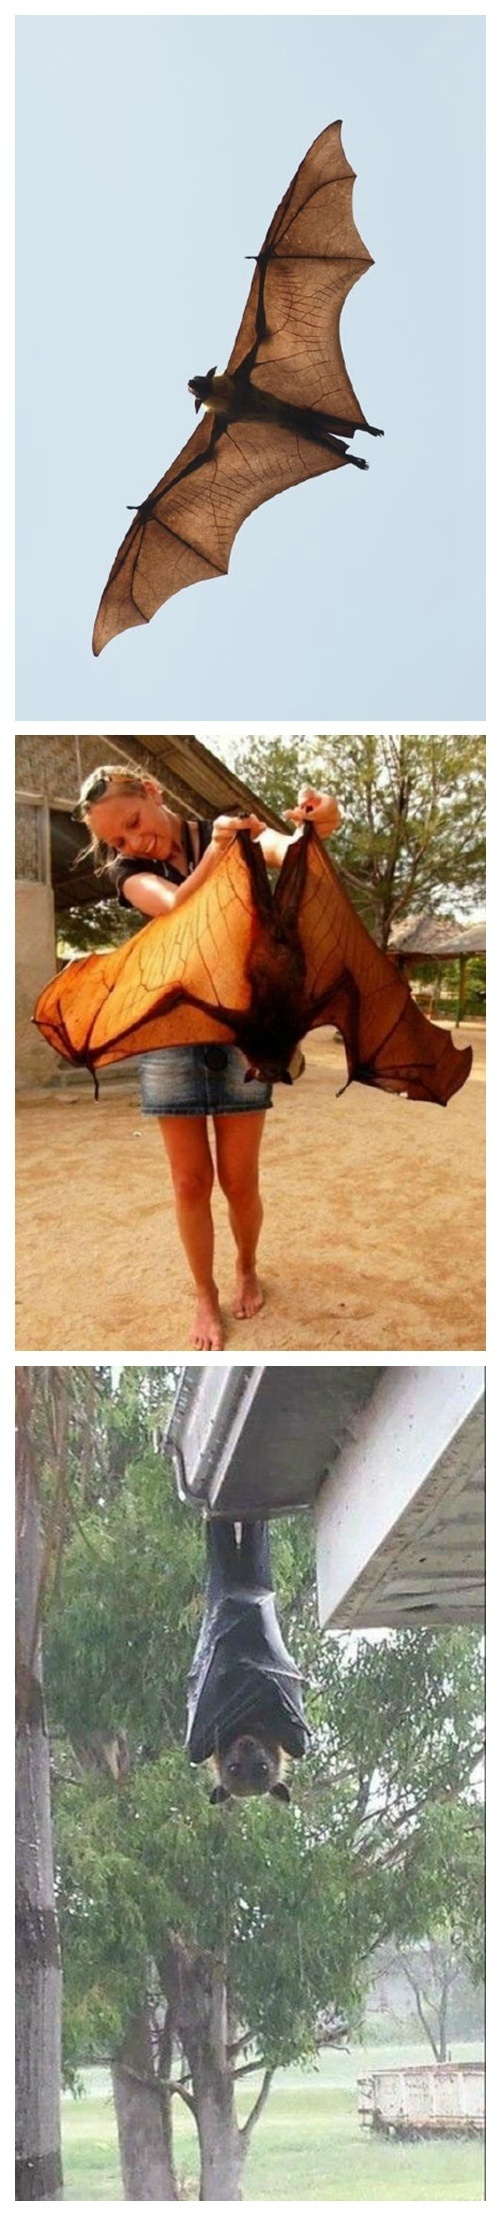 印度狐蝠Pteropus giganteus 带崽飞行，好大的蝙蝠